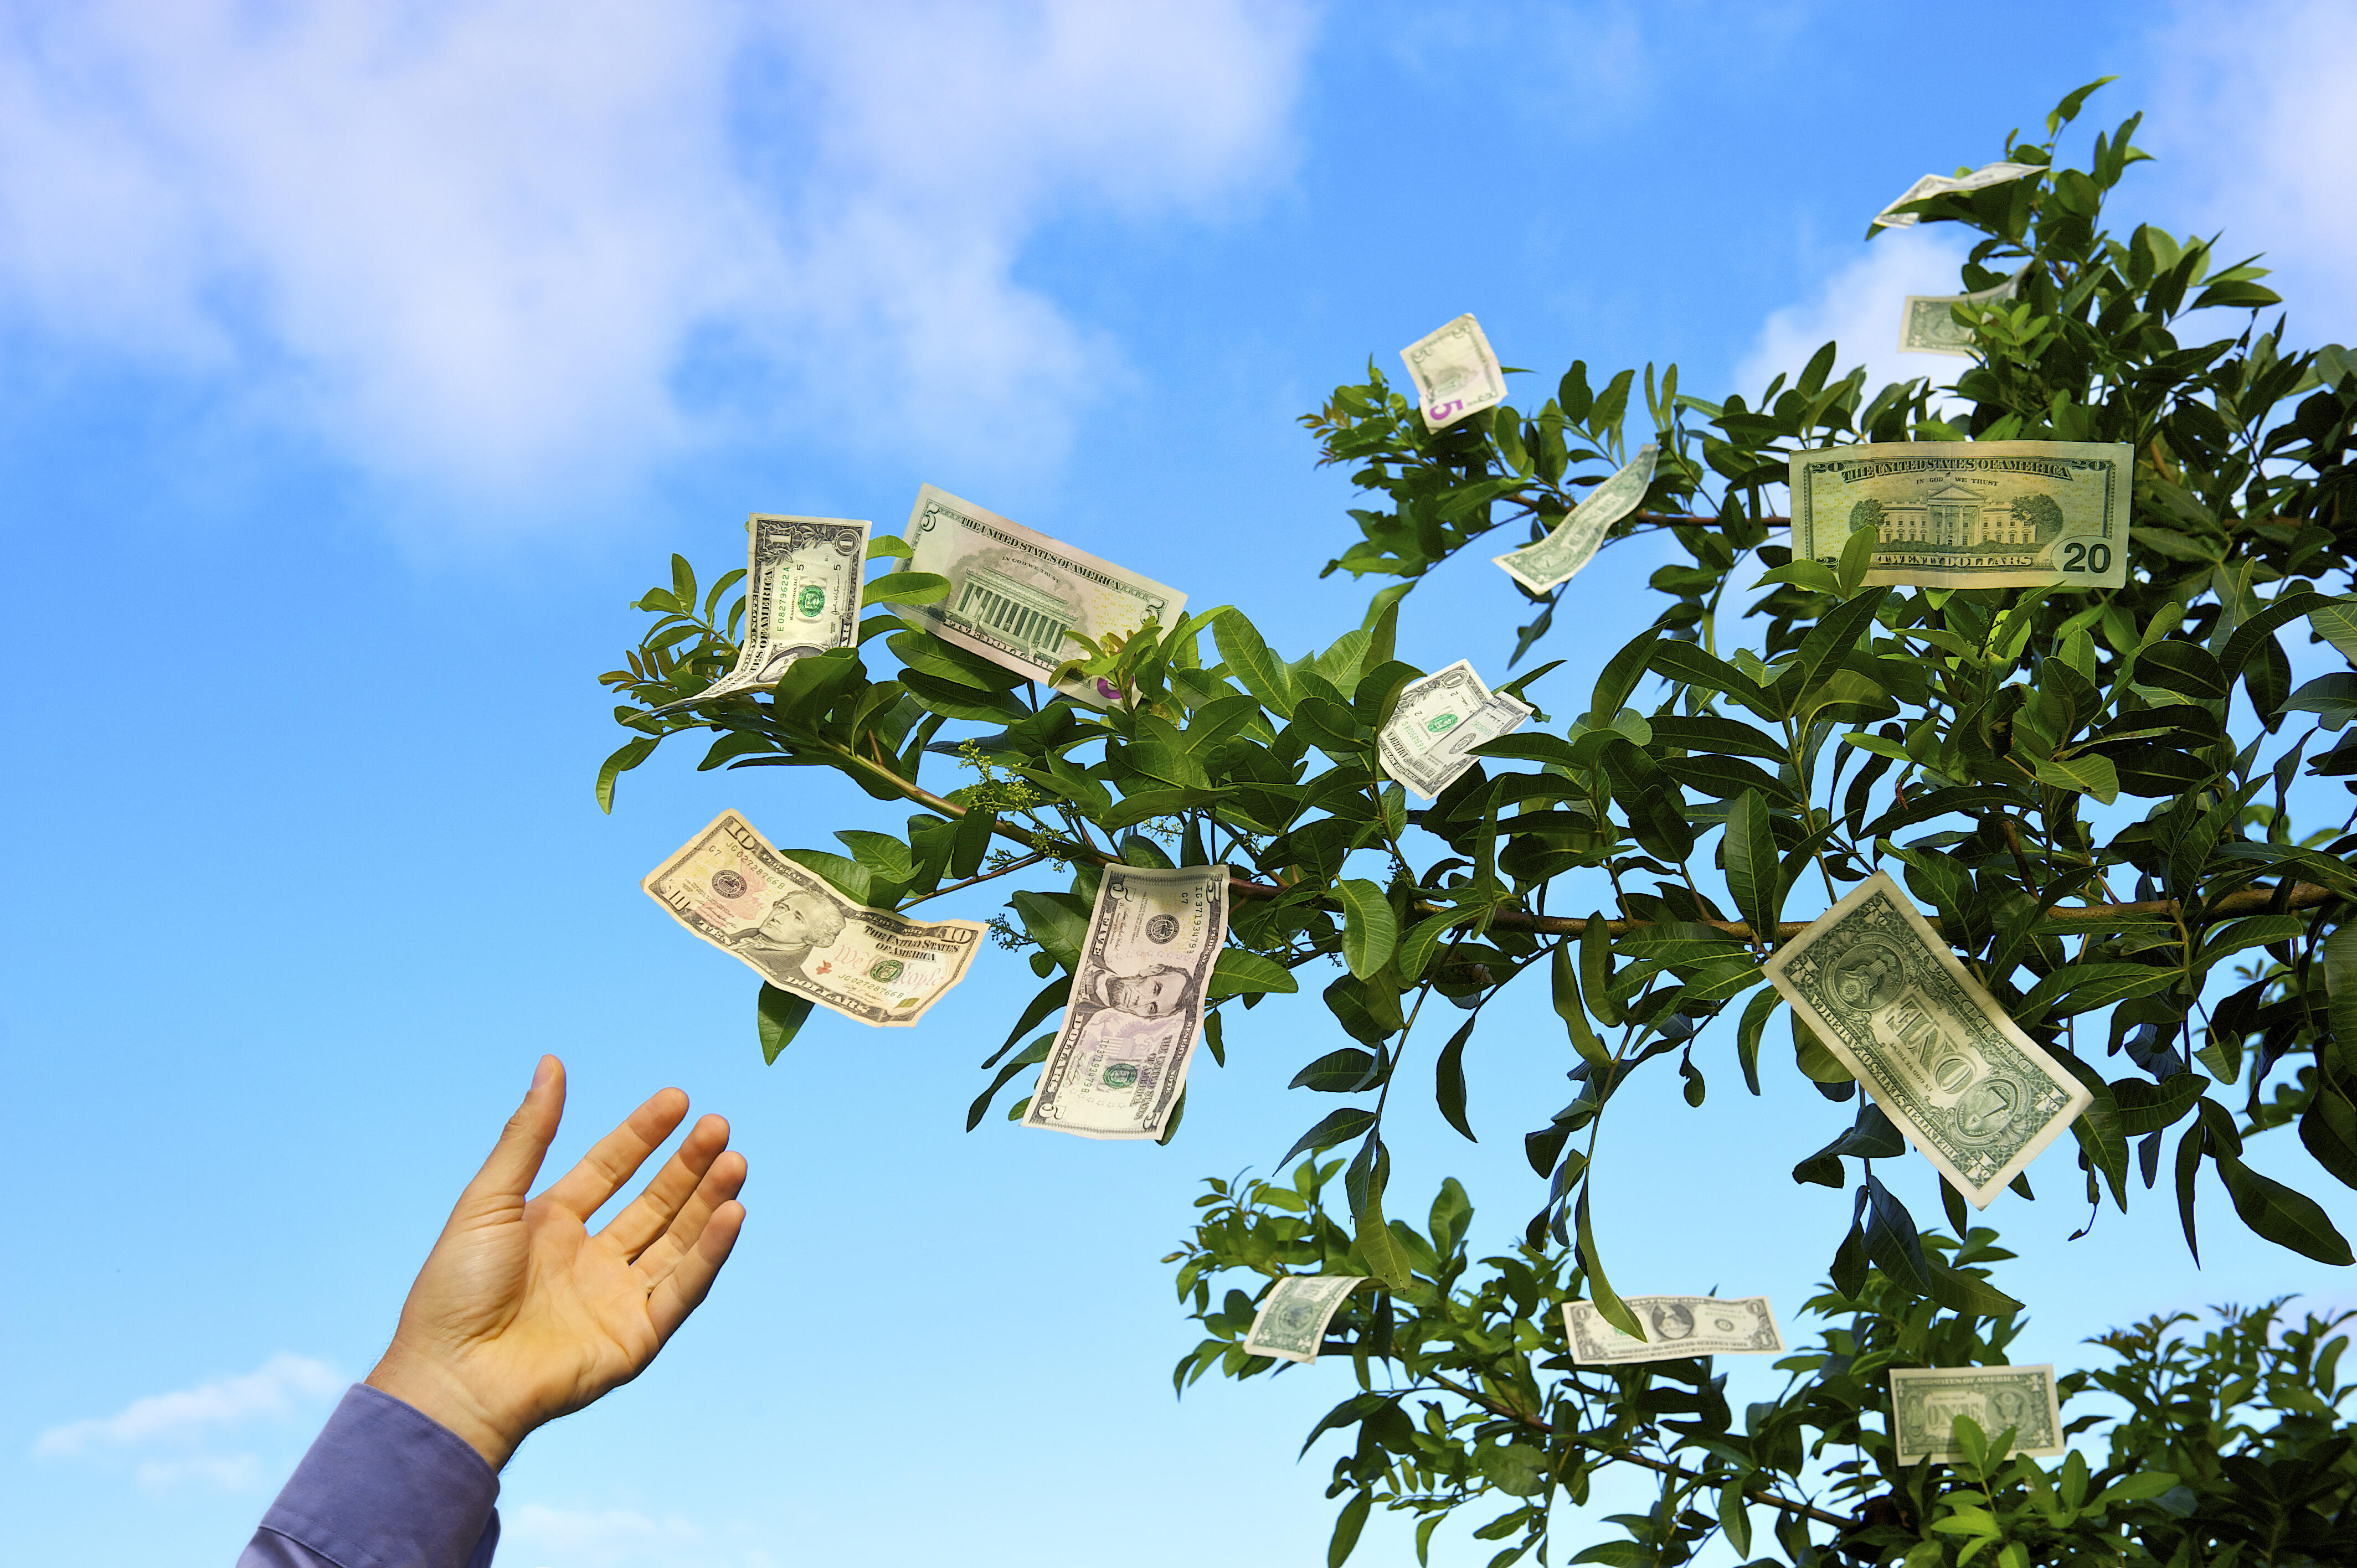 Можно поднимать деньги на улице. Дерево с деньгами. Деньги растут на деревьях. Деньги и природа. Денежное дерево с купюрами.